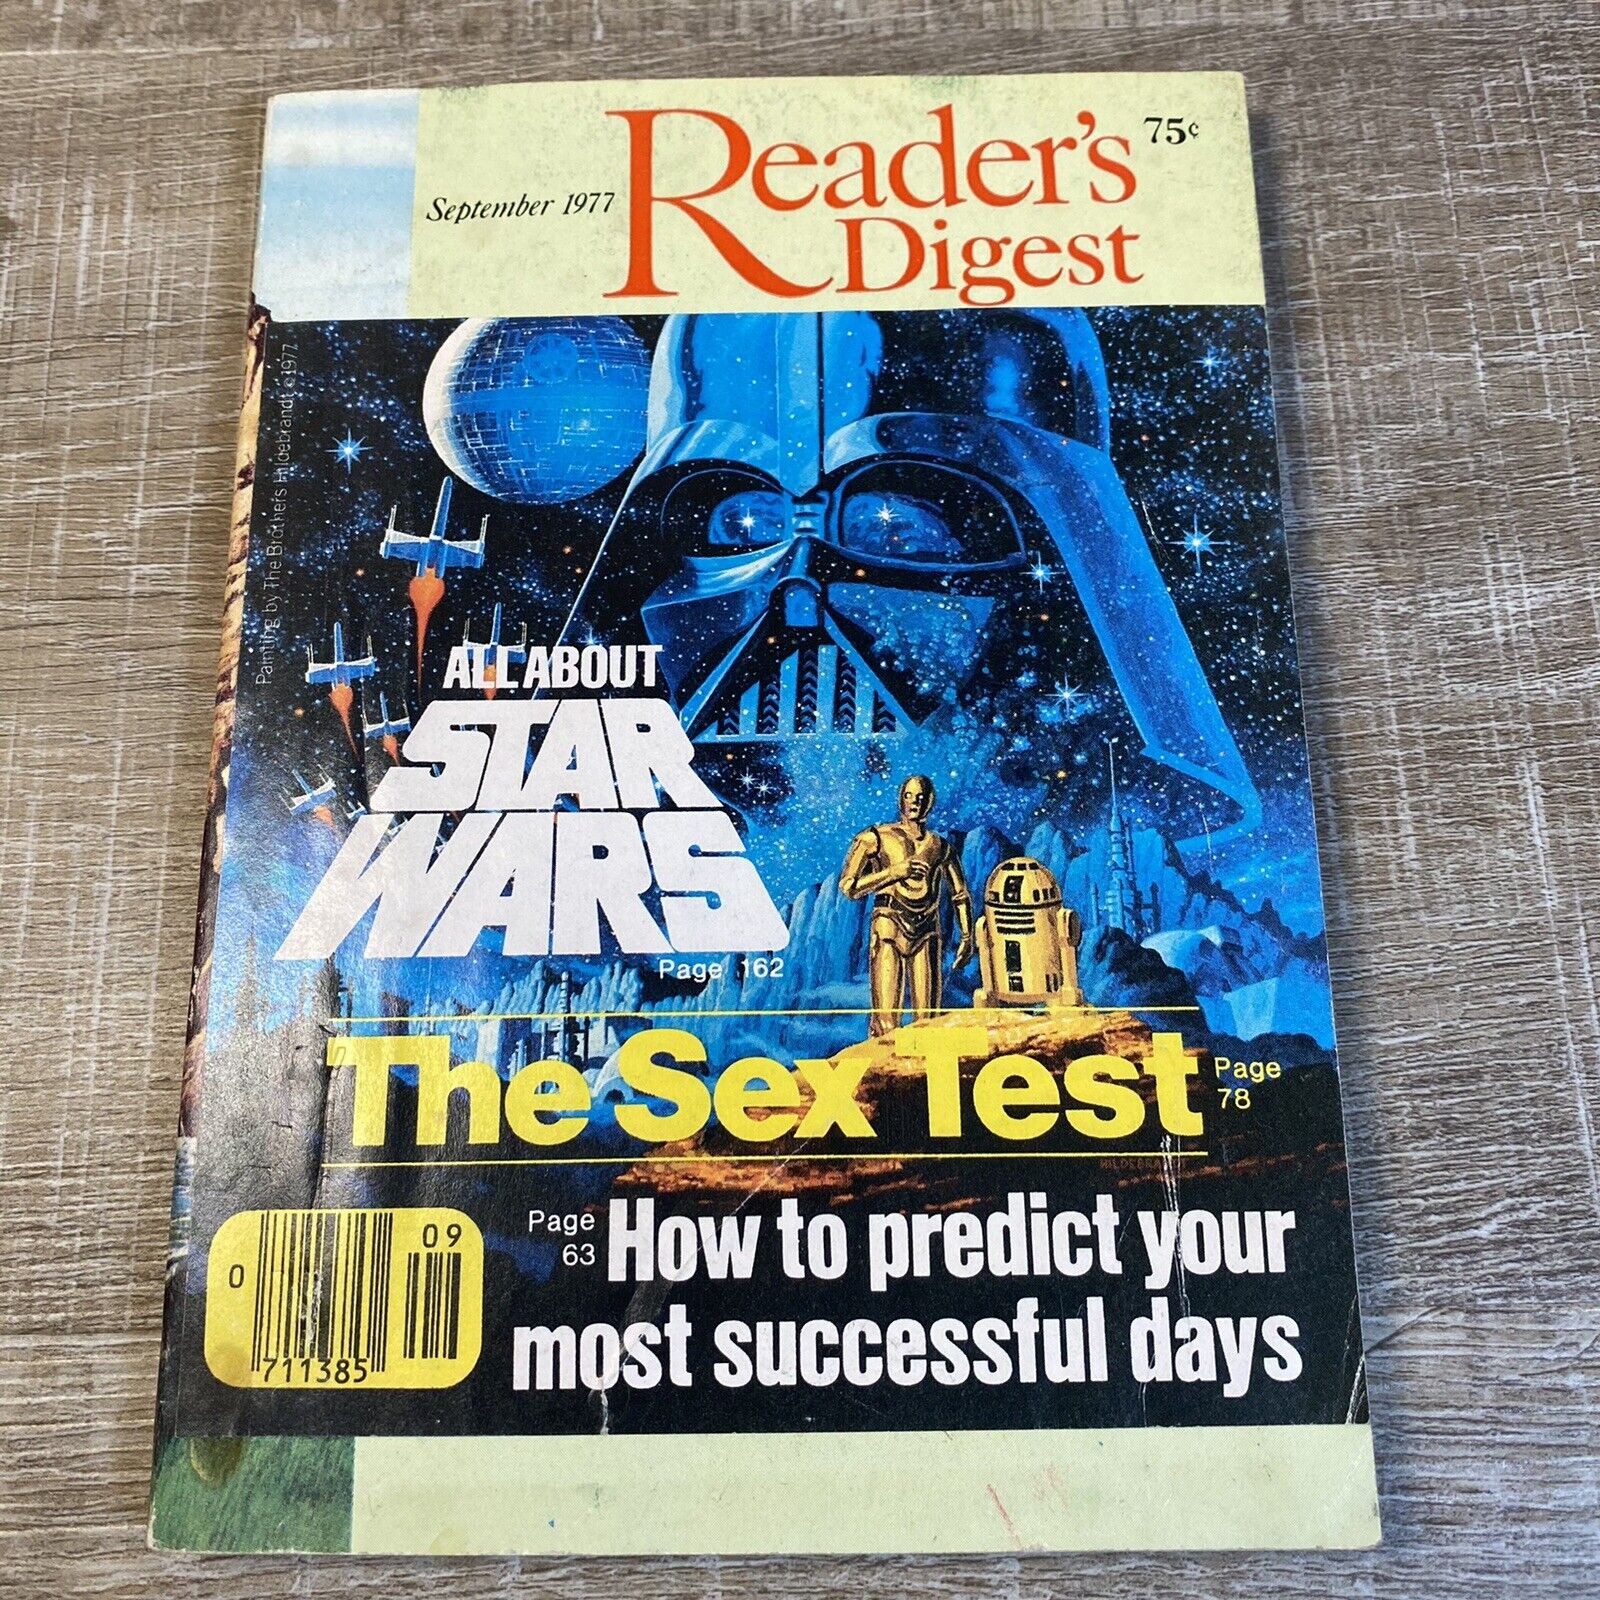 Star Wars Readers Digest Sept 1977 w/Original SW Cover Wrap Still Glued On VTG